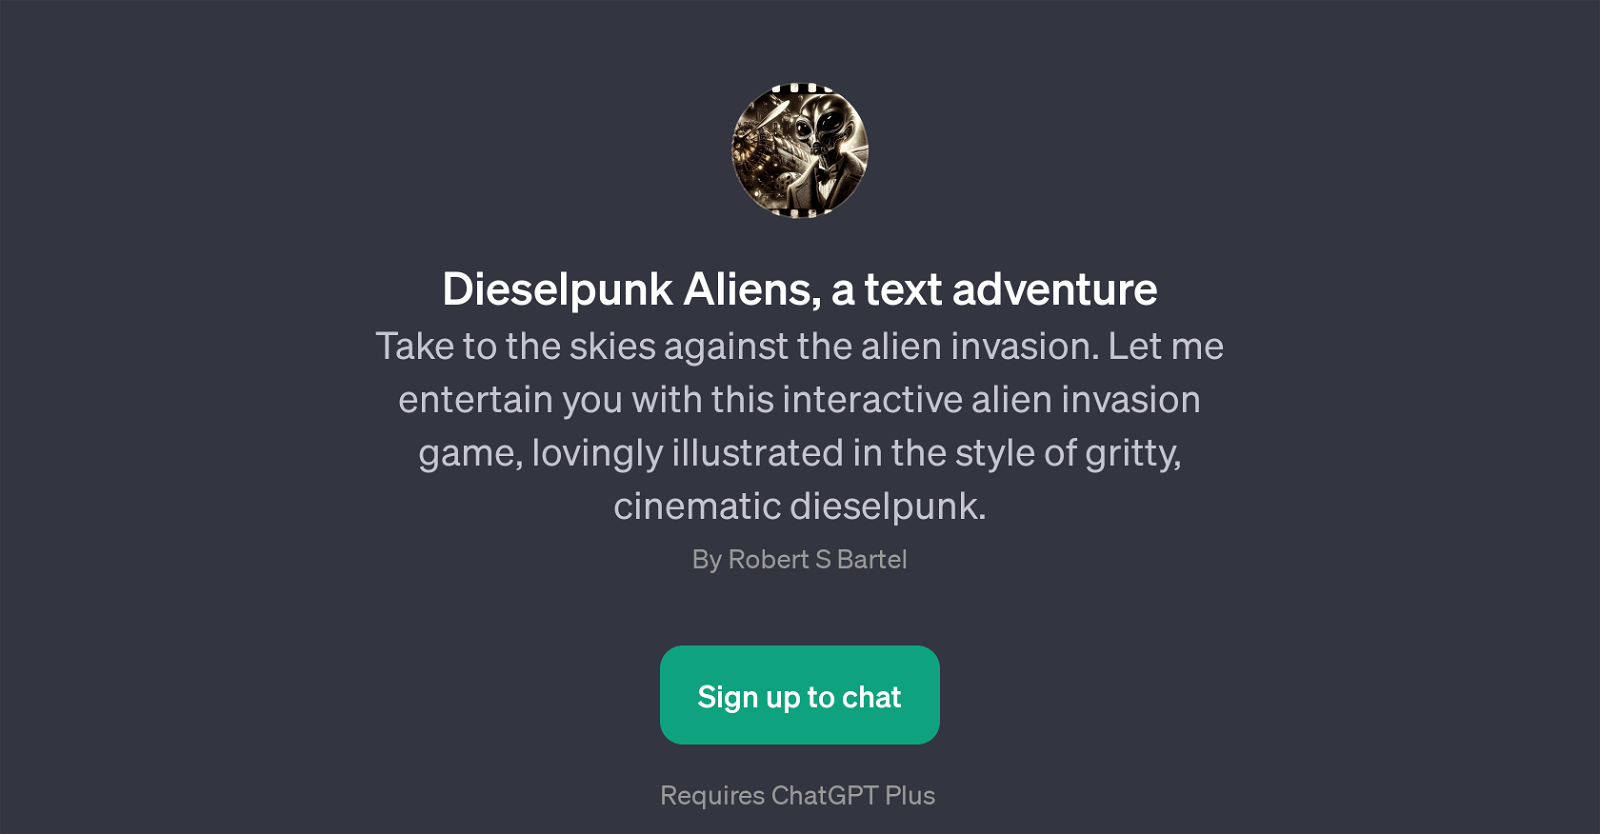 Dieselpunk Aliens website